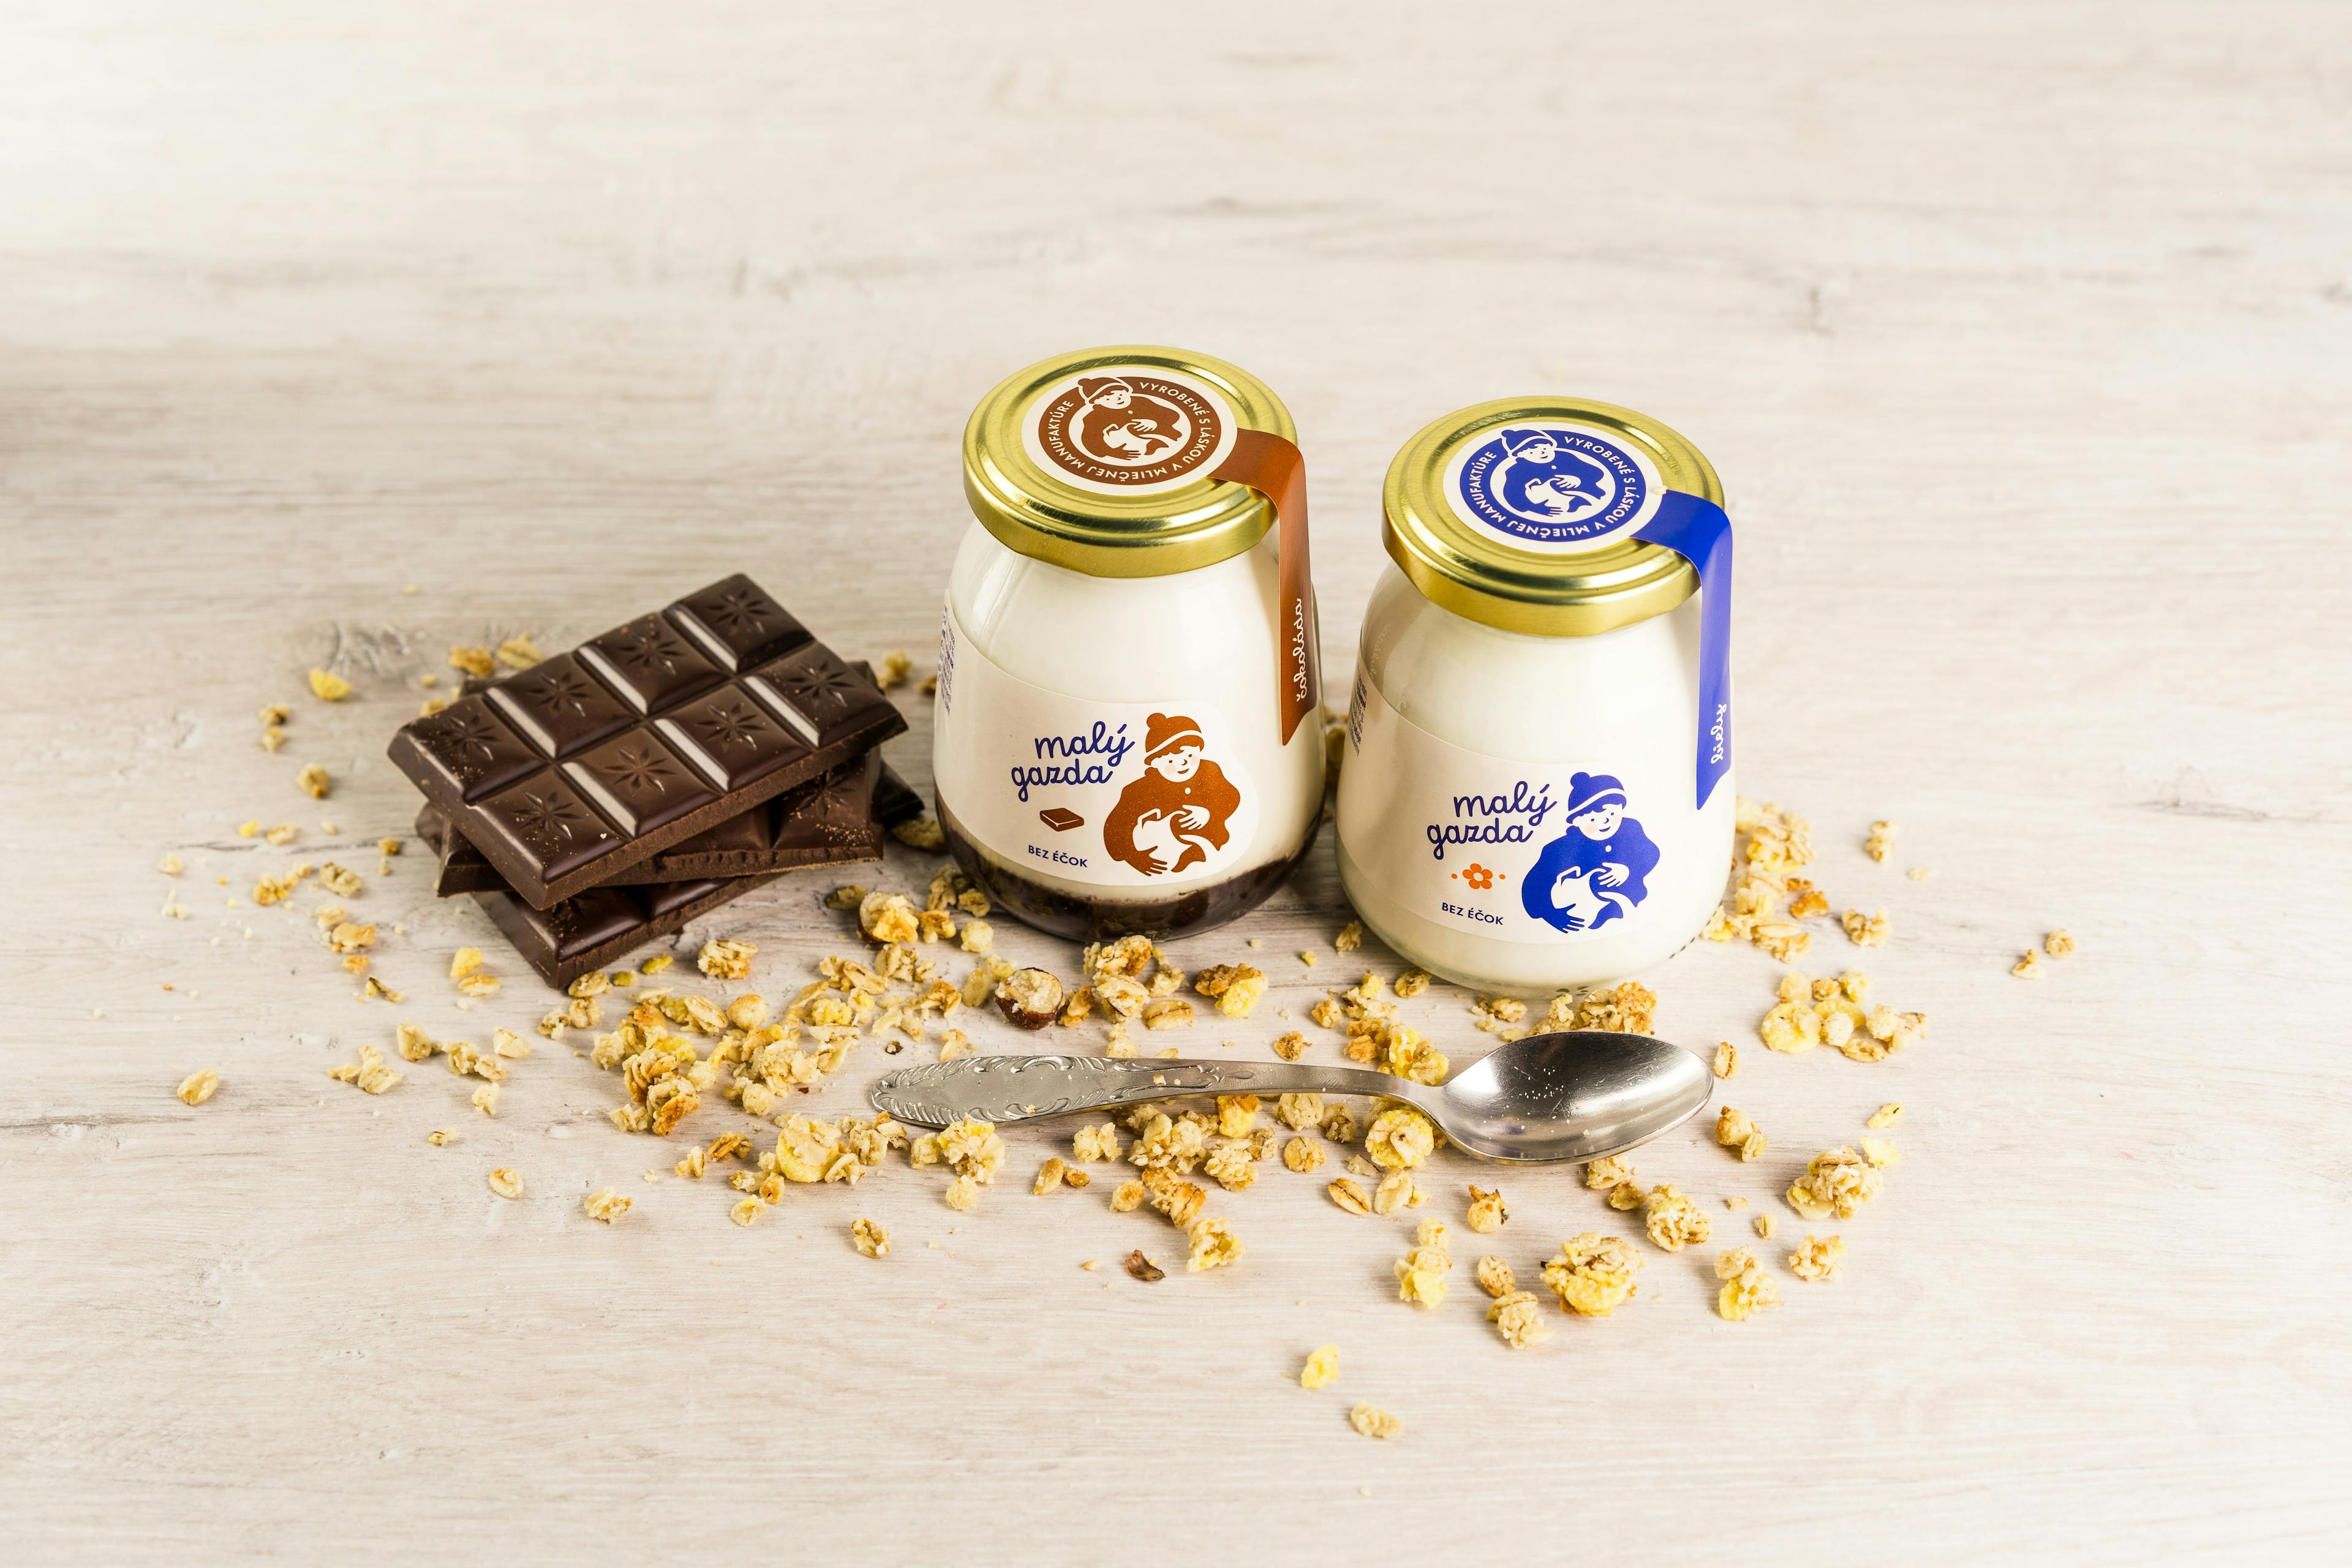 Malý gazda - cesta z rodinné mini-mlékárny na prémiovou mléčnou manufakturu s mezinárodními ambicemi